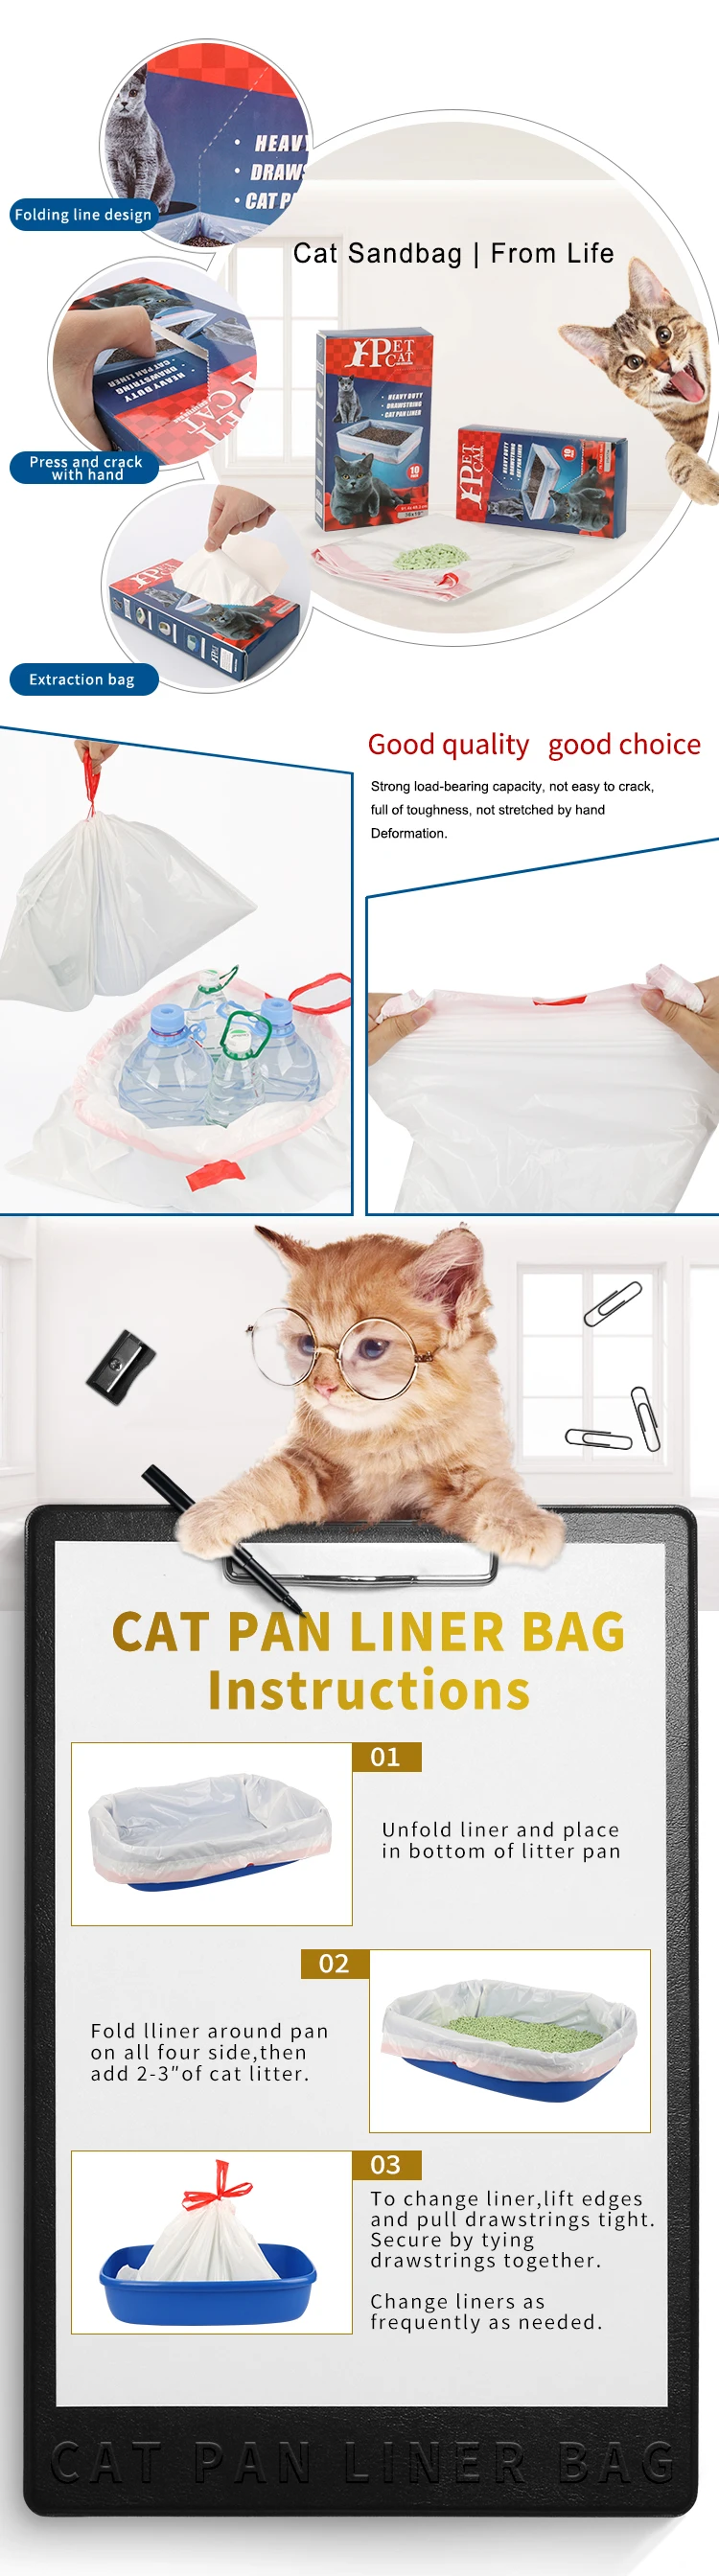 Litera perfumada Pan Box Liners, bolsos para arriba del lazo enorme limpio fácil para los gatos del animal doméstico